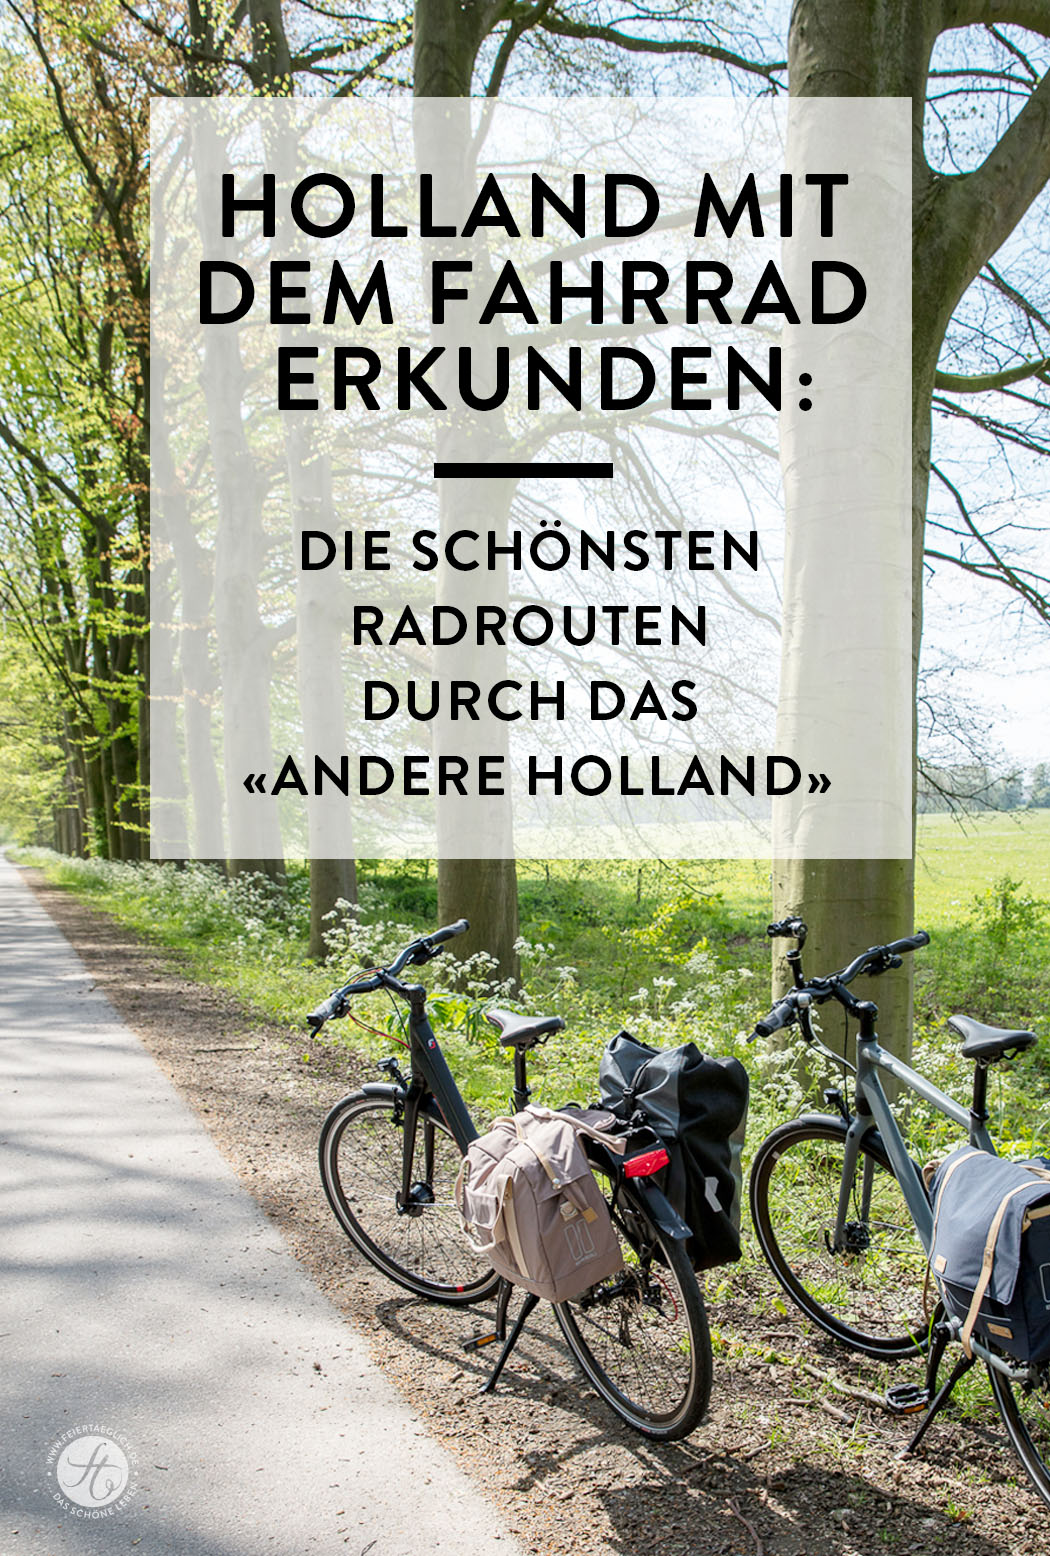 Holland mit dem Fahrrad erkunden: Die schönsten Radrouten durch das "andere Holland" mit Knotenpunkten und GPS Daten, Reisetipps